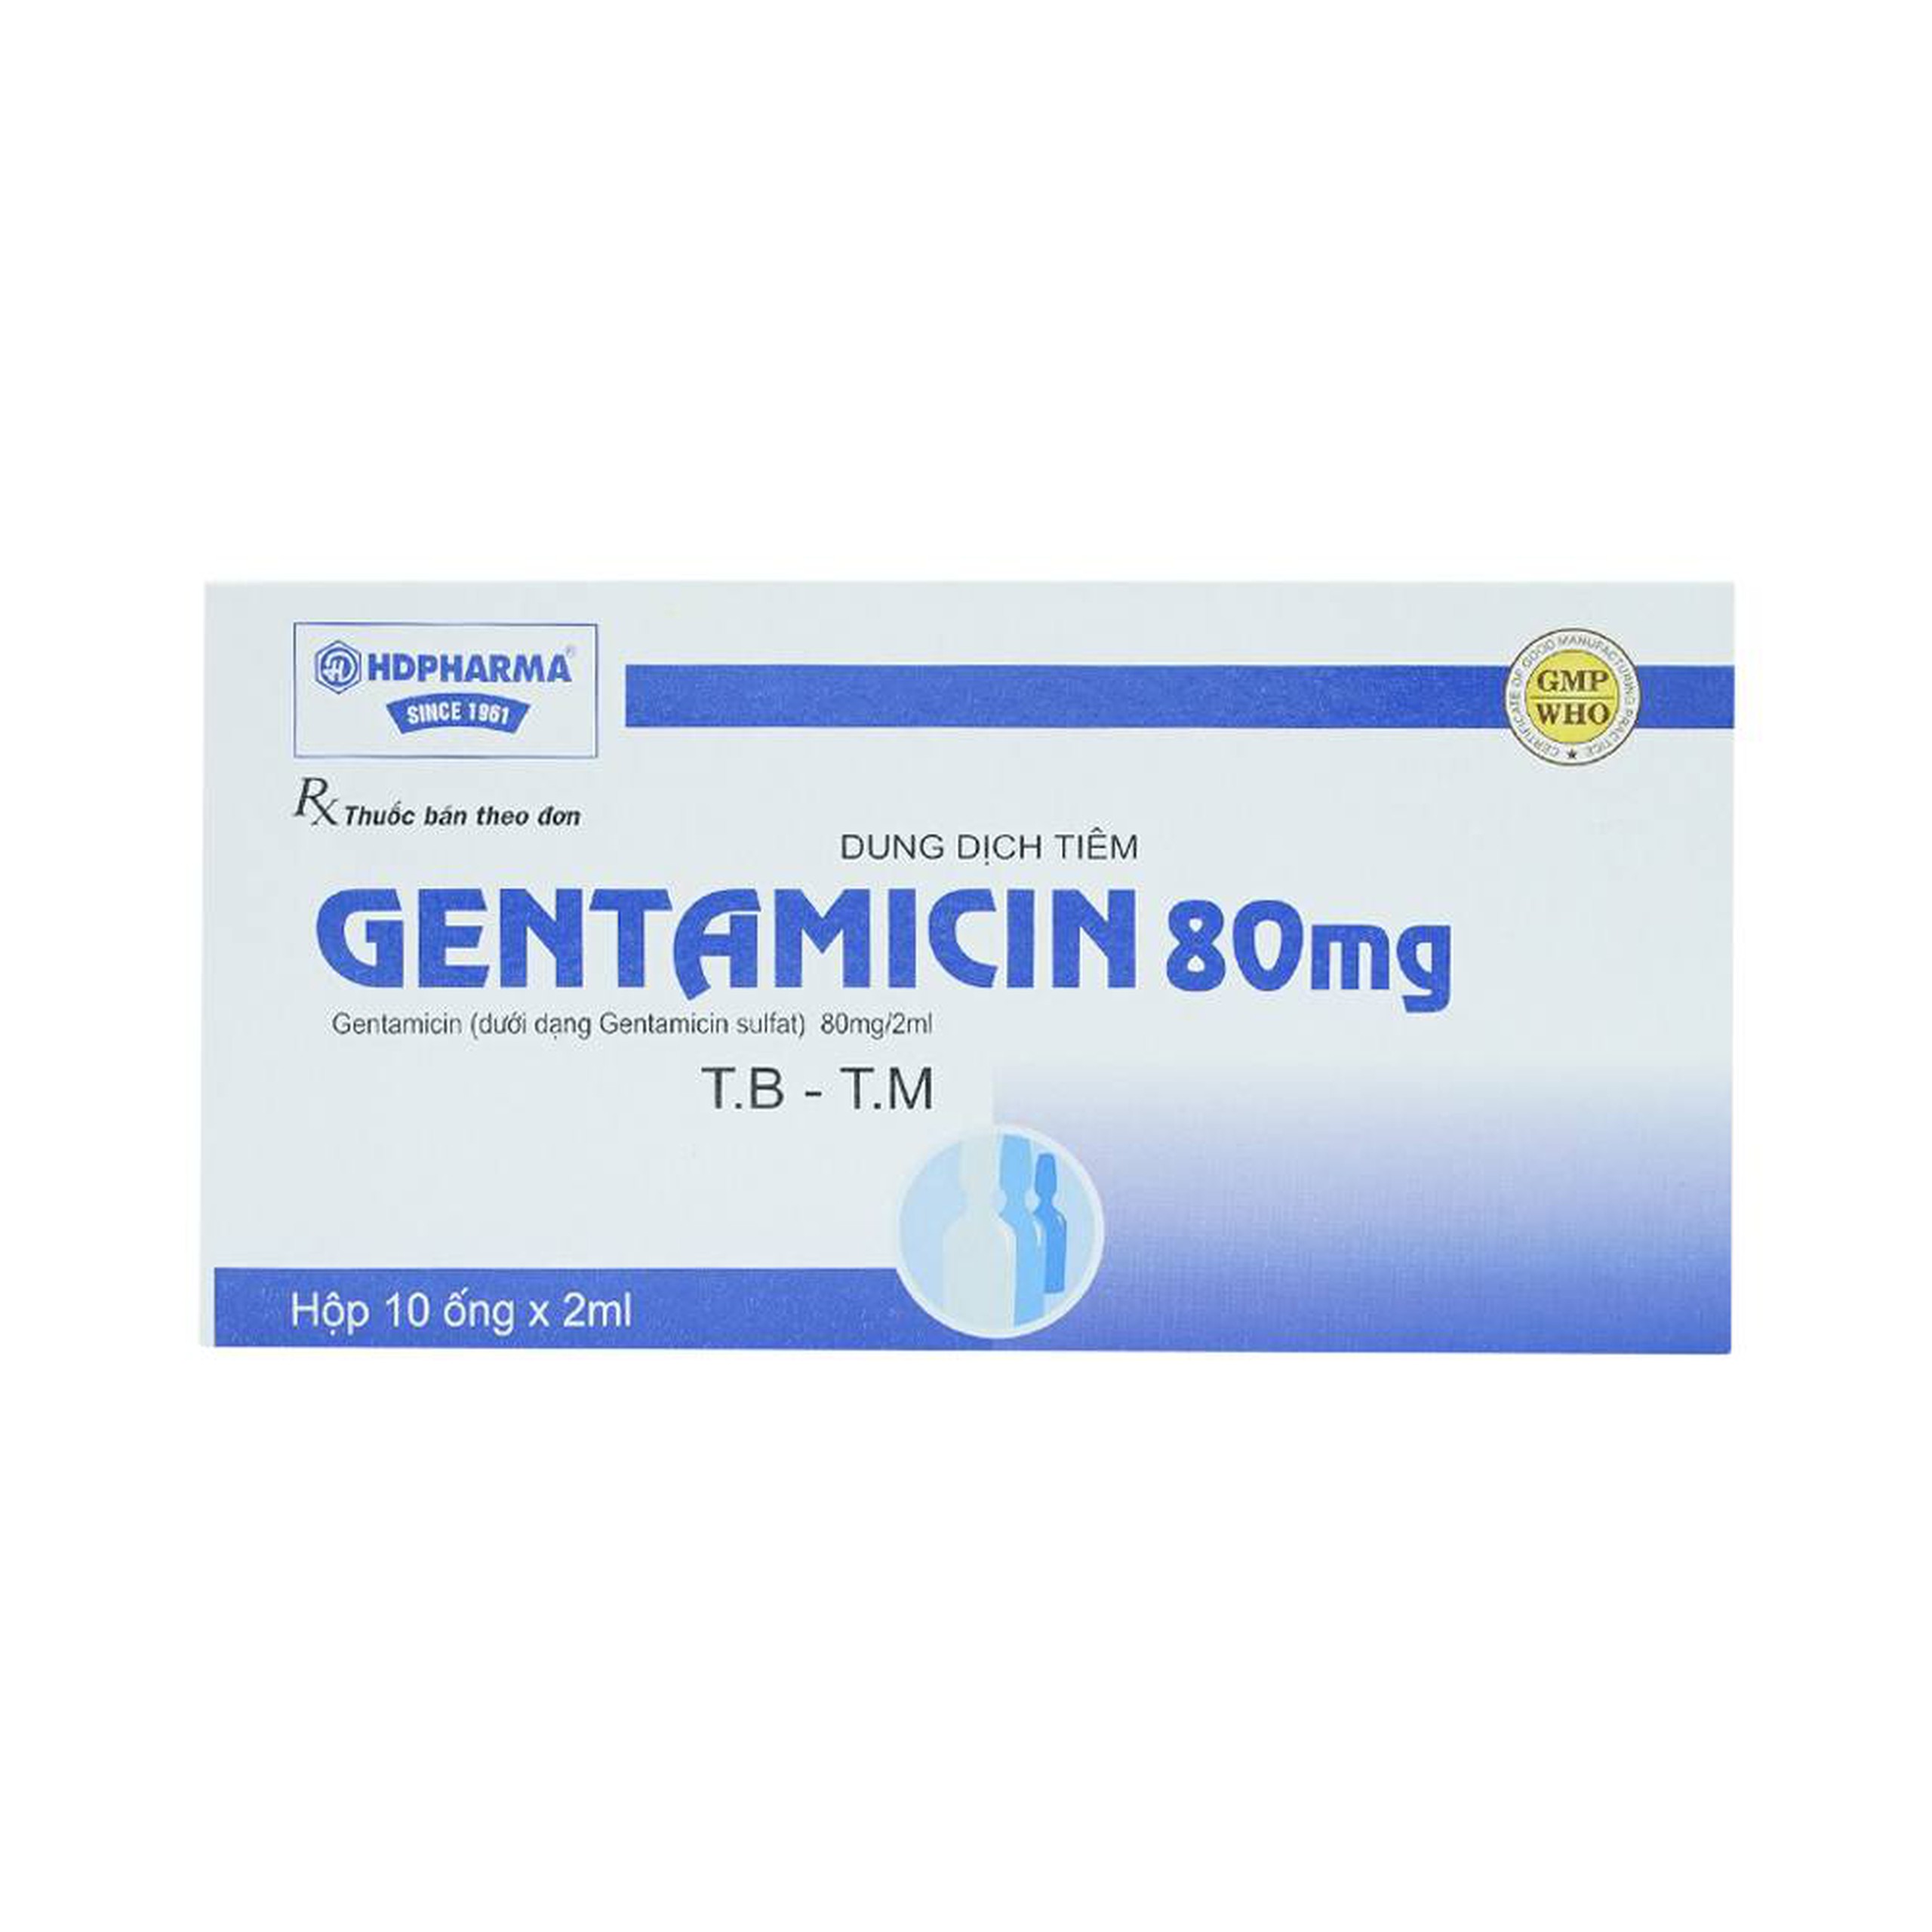 Dung dịch tiêm Gentamicin 80mg HDPharma điều trị nhiễm khuẩn nặng (10 ống x 2ml)